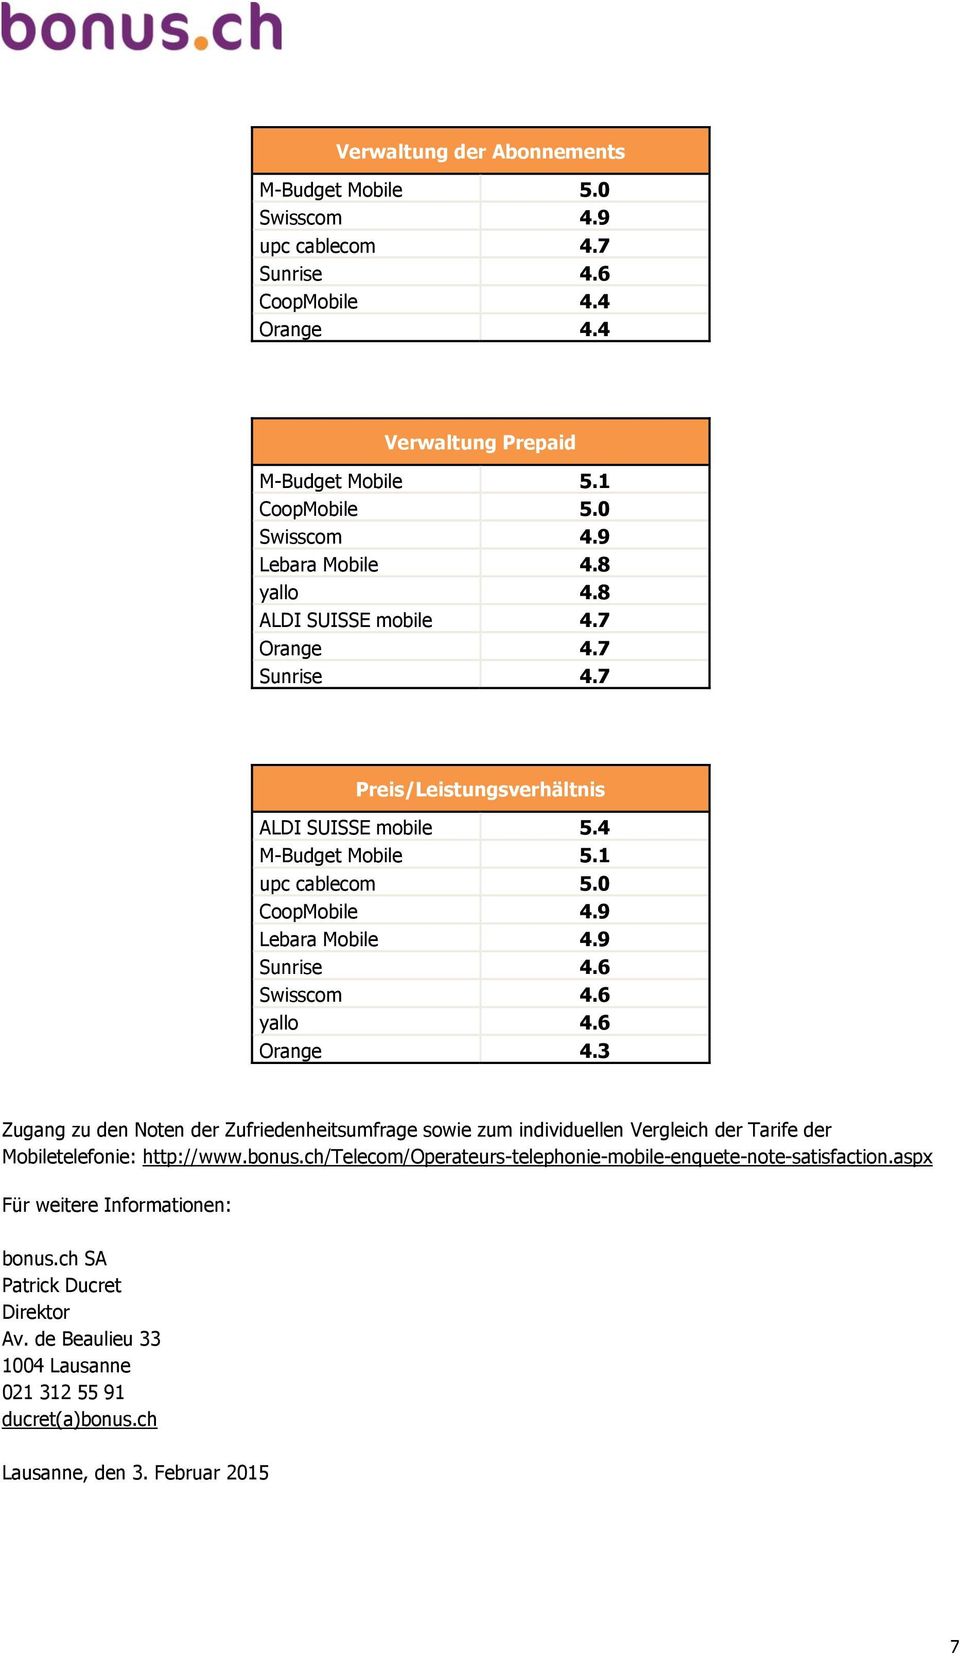 6 Swisscom 4.6 yallo 4.6 Orange 4.3 Zugang zu den Noten der Zufriedenheitsumfrage sowie zum individuellen Vergleich der Tarife der Mobiletelefonie: http://www.bonus.